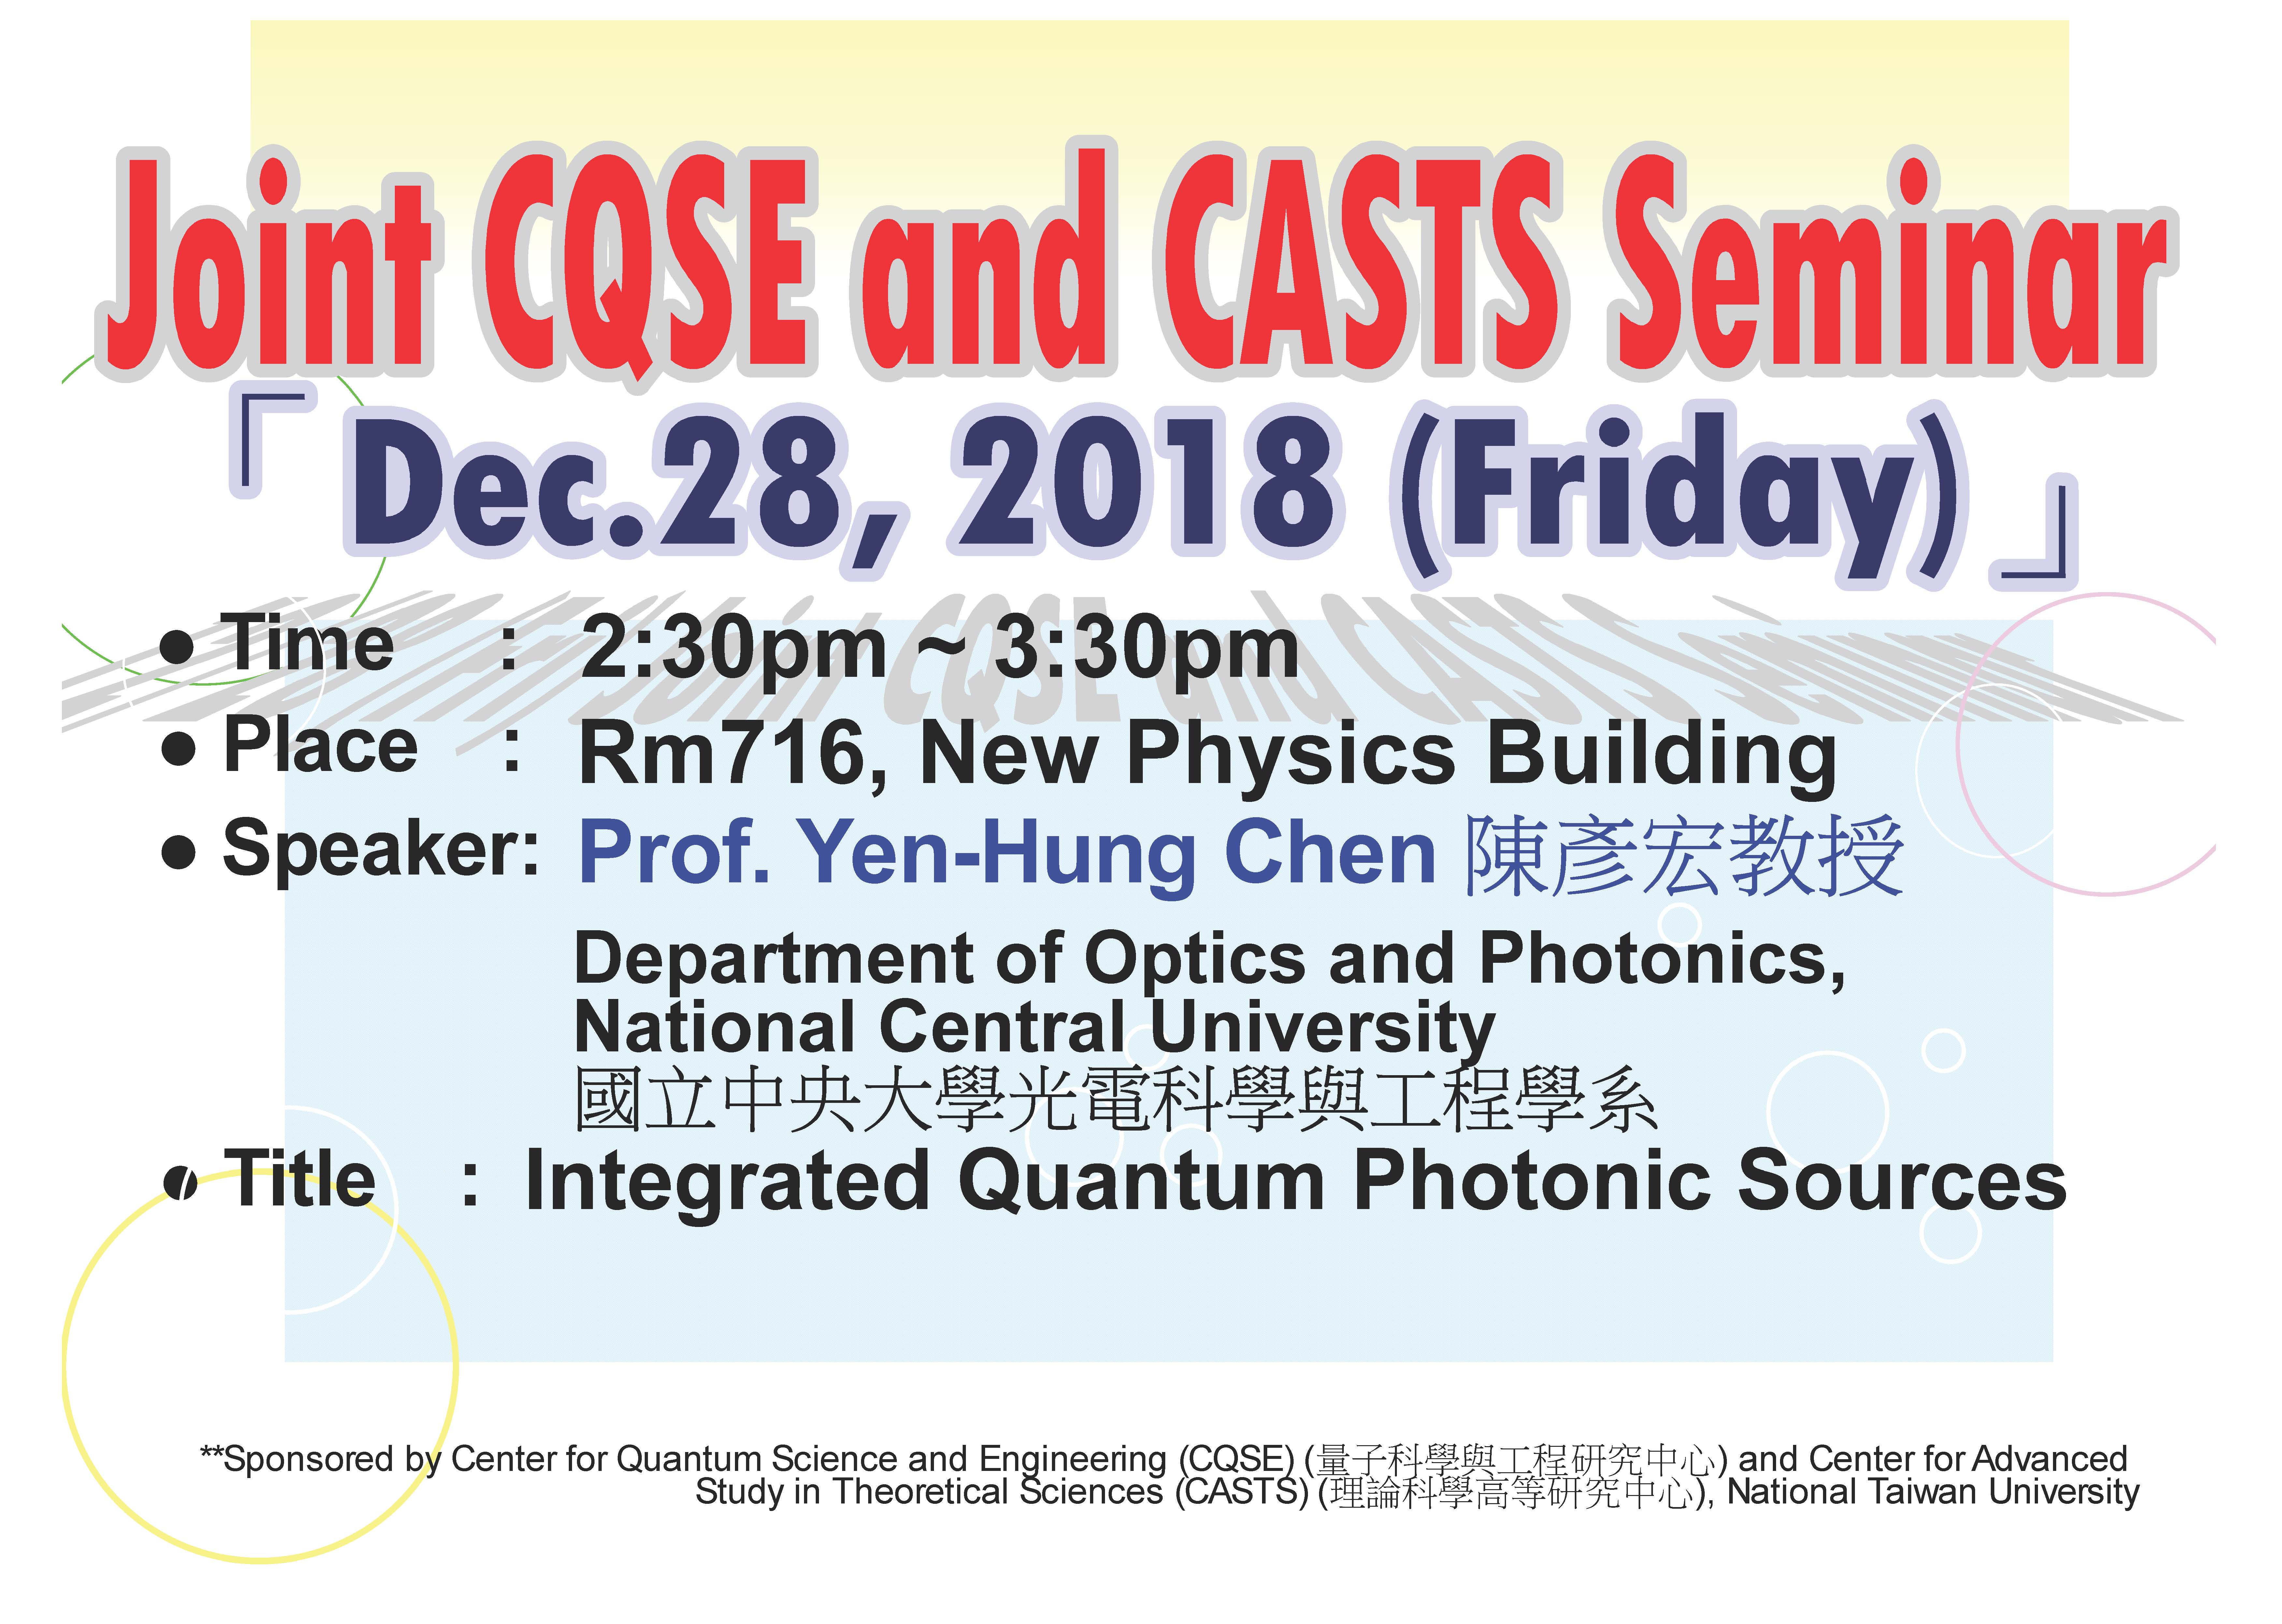 Joint CQSE and CASTS Seminar 